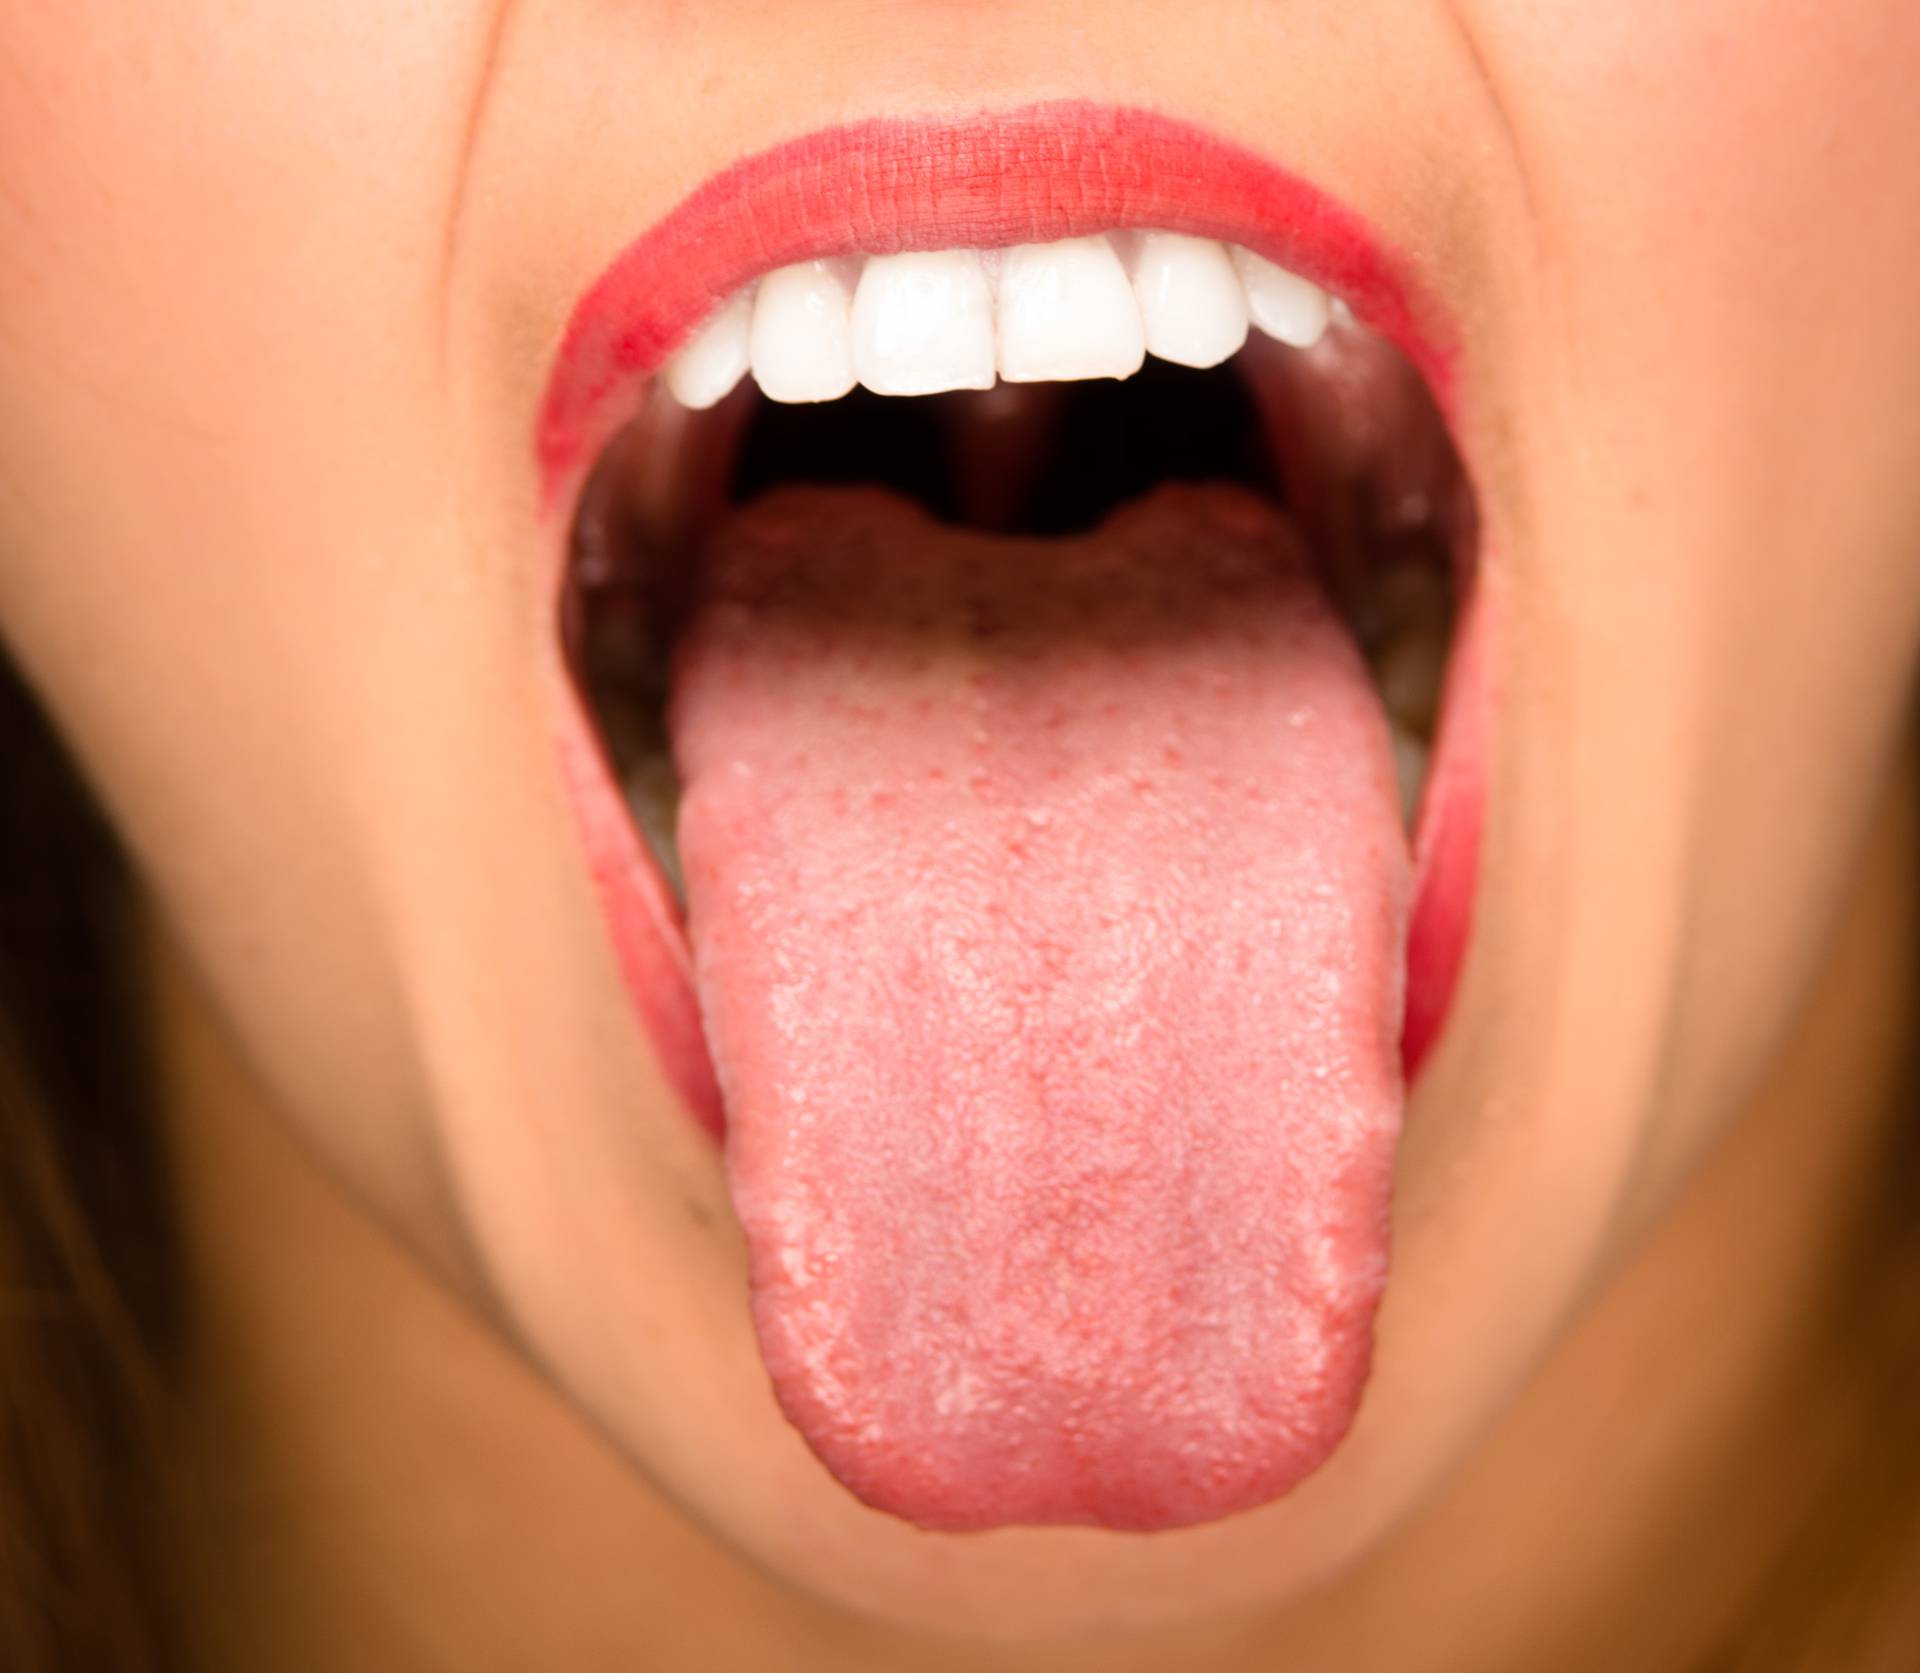 Pogledajte svoj jezik! Otkriva ozbiljne zdravstvene probleme